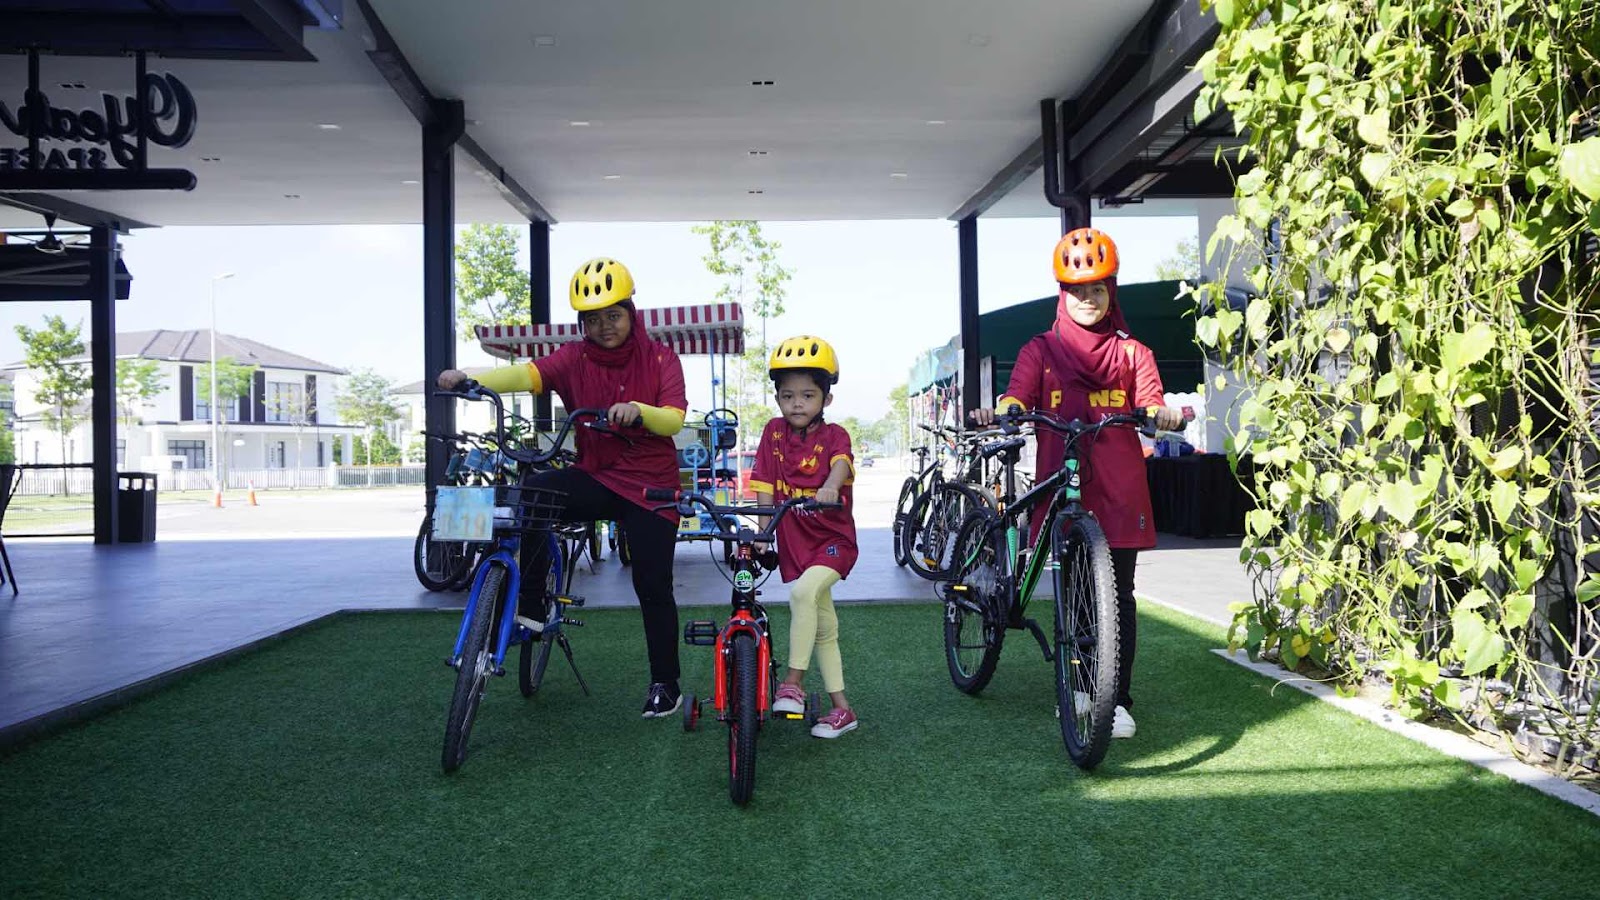 DGB Bike City Eco Grandeur Puncak Alam Premium Beautiful Therapants Theravest Harga Murah